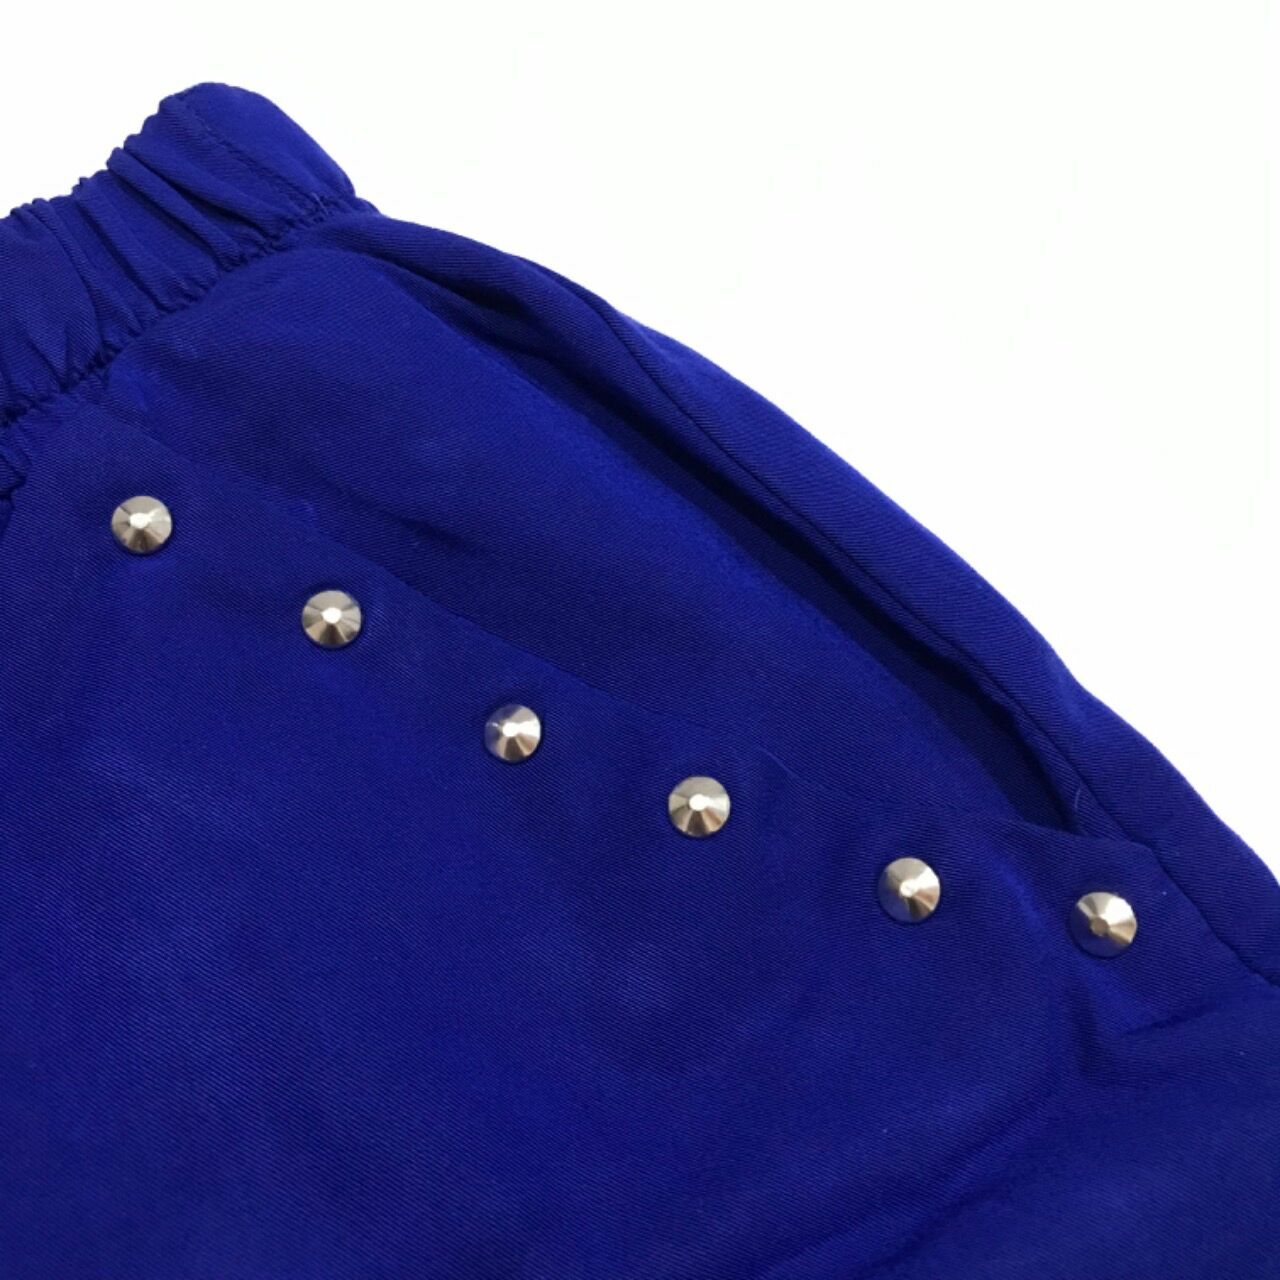 Pull & Bear Blue Stud Skirt